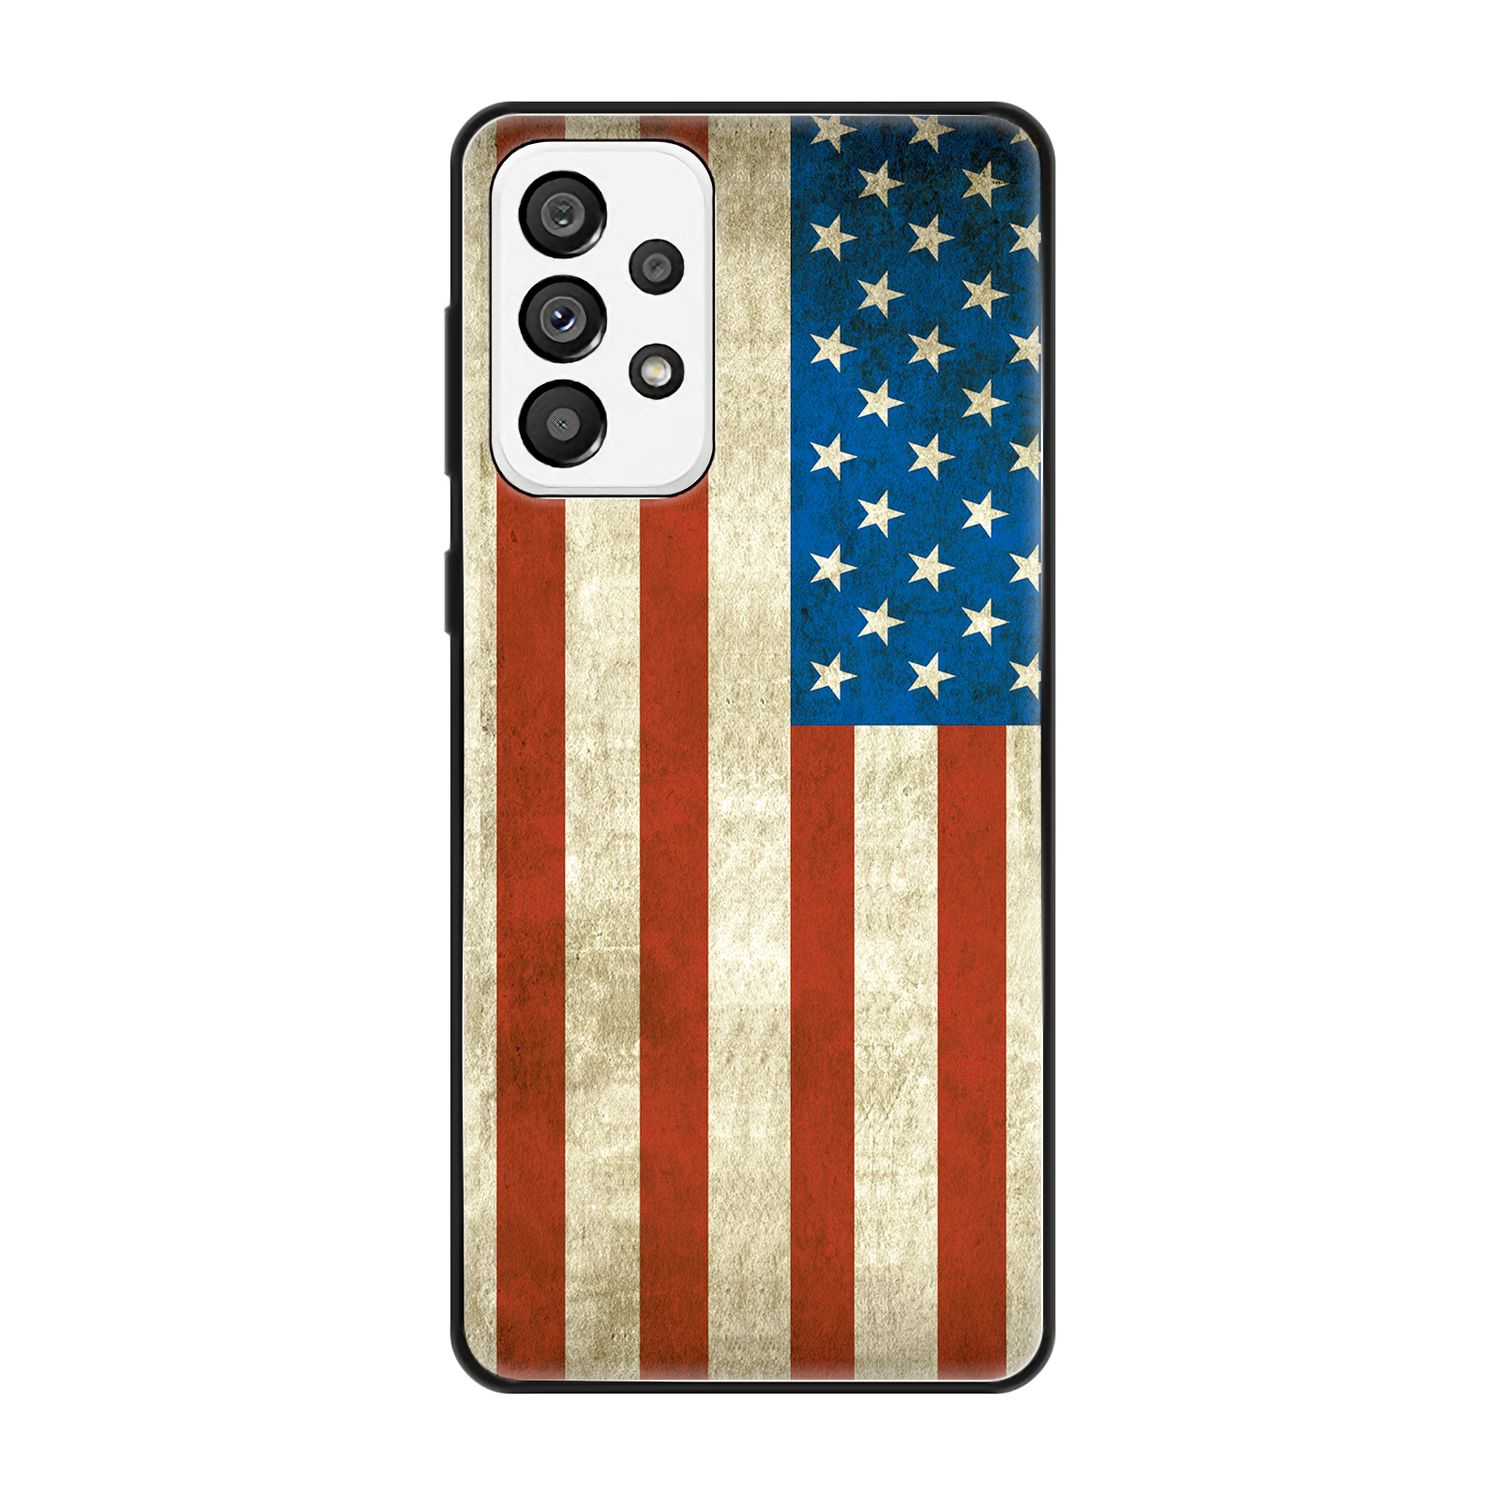 Flagge Galaxy 5G, USA DESIGN A73 Samsung, KÖNIG Backcover, Case,